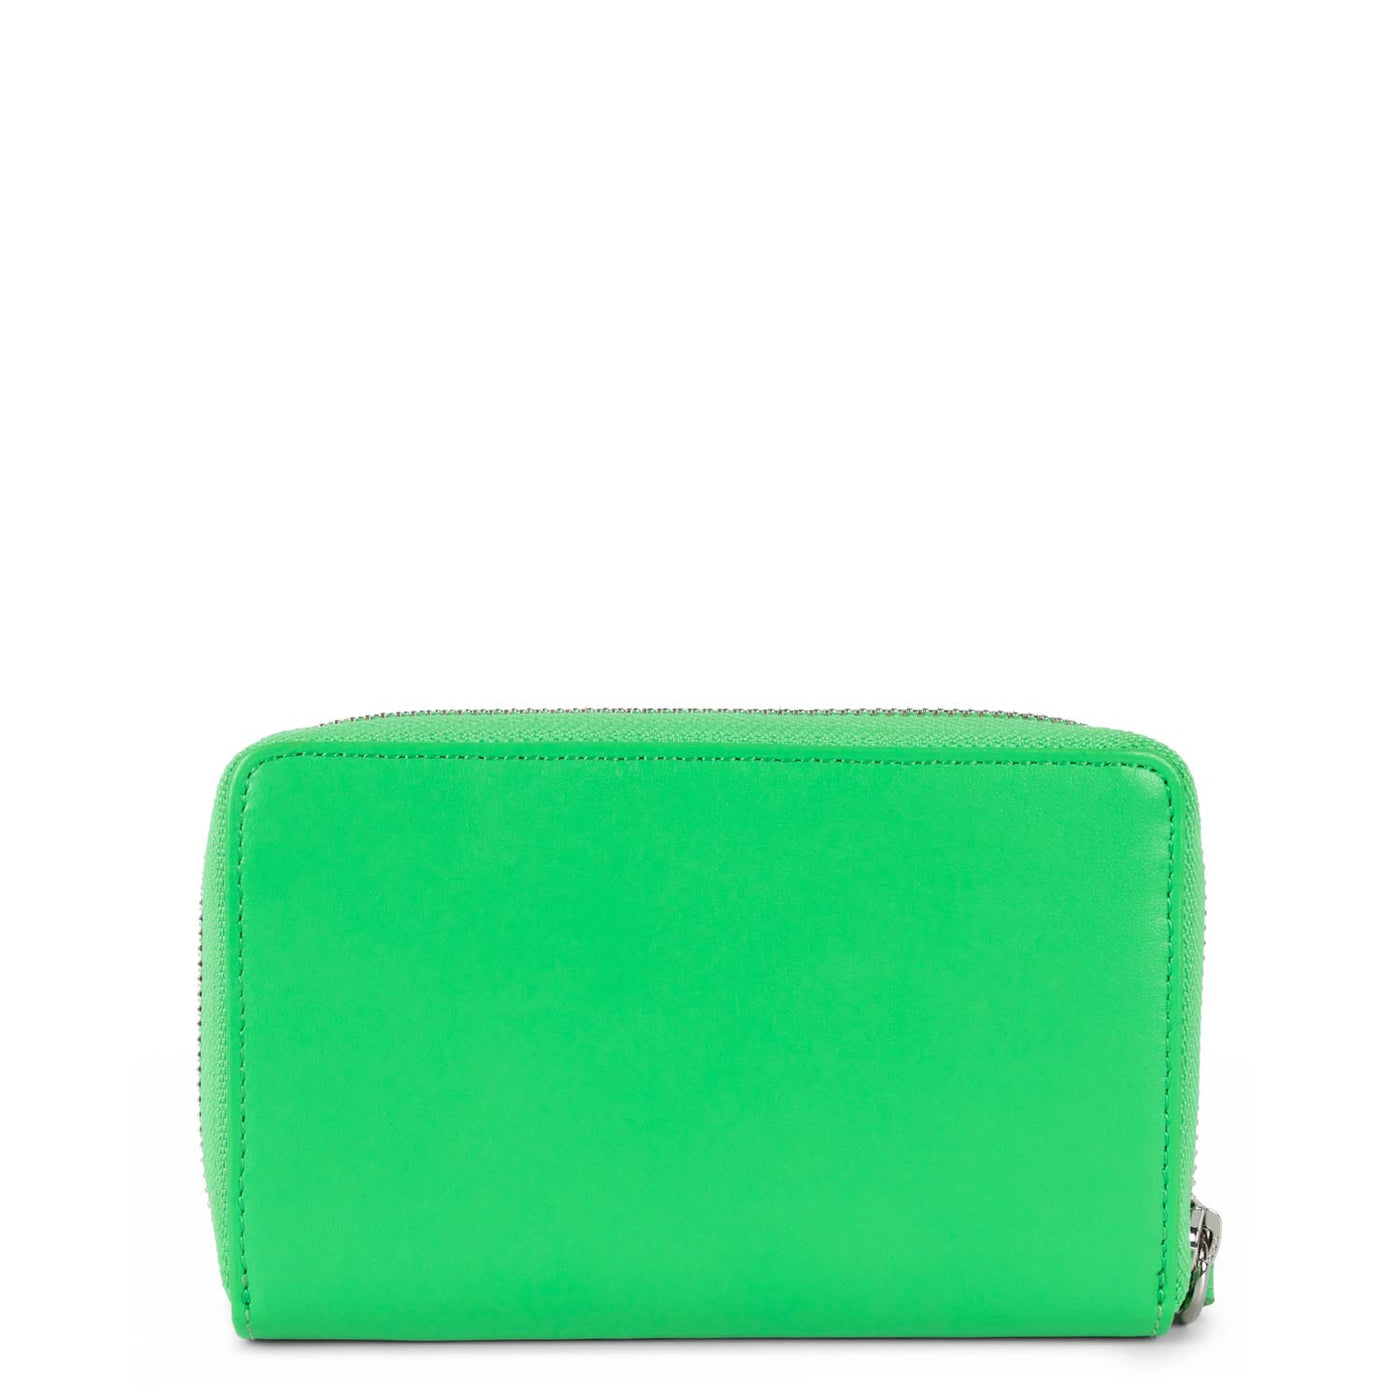 wallet - paris pm #couleur_vert-colo